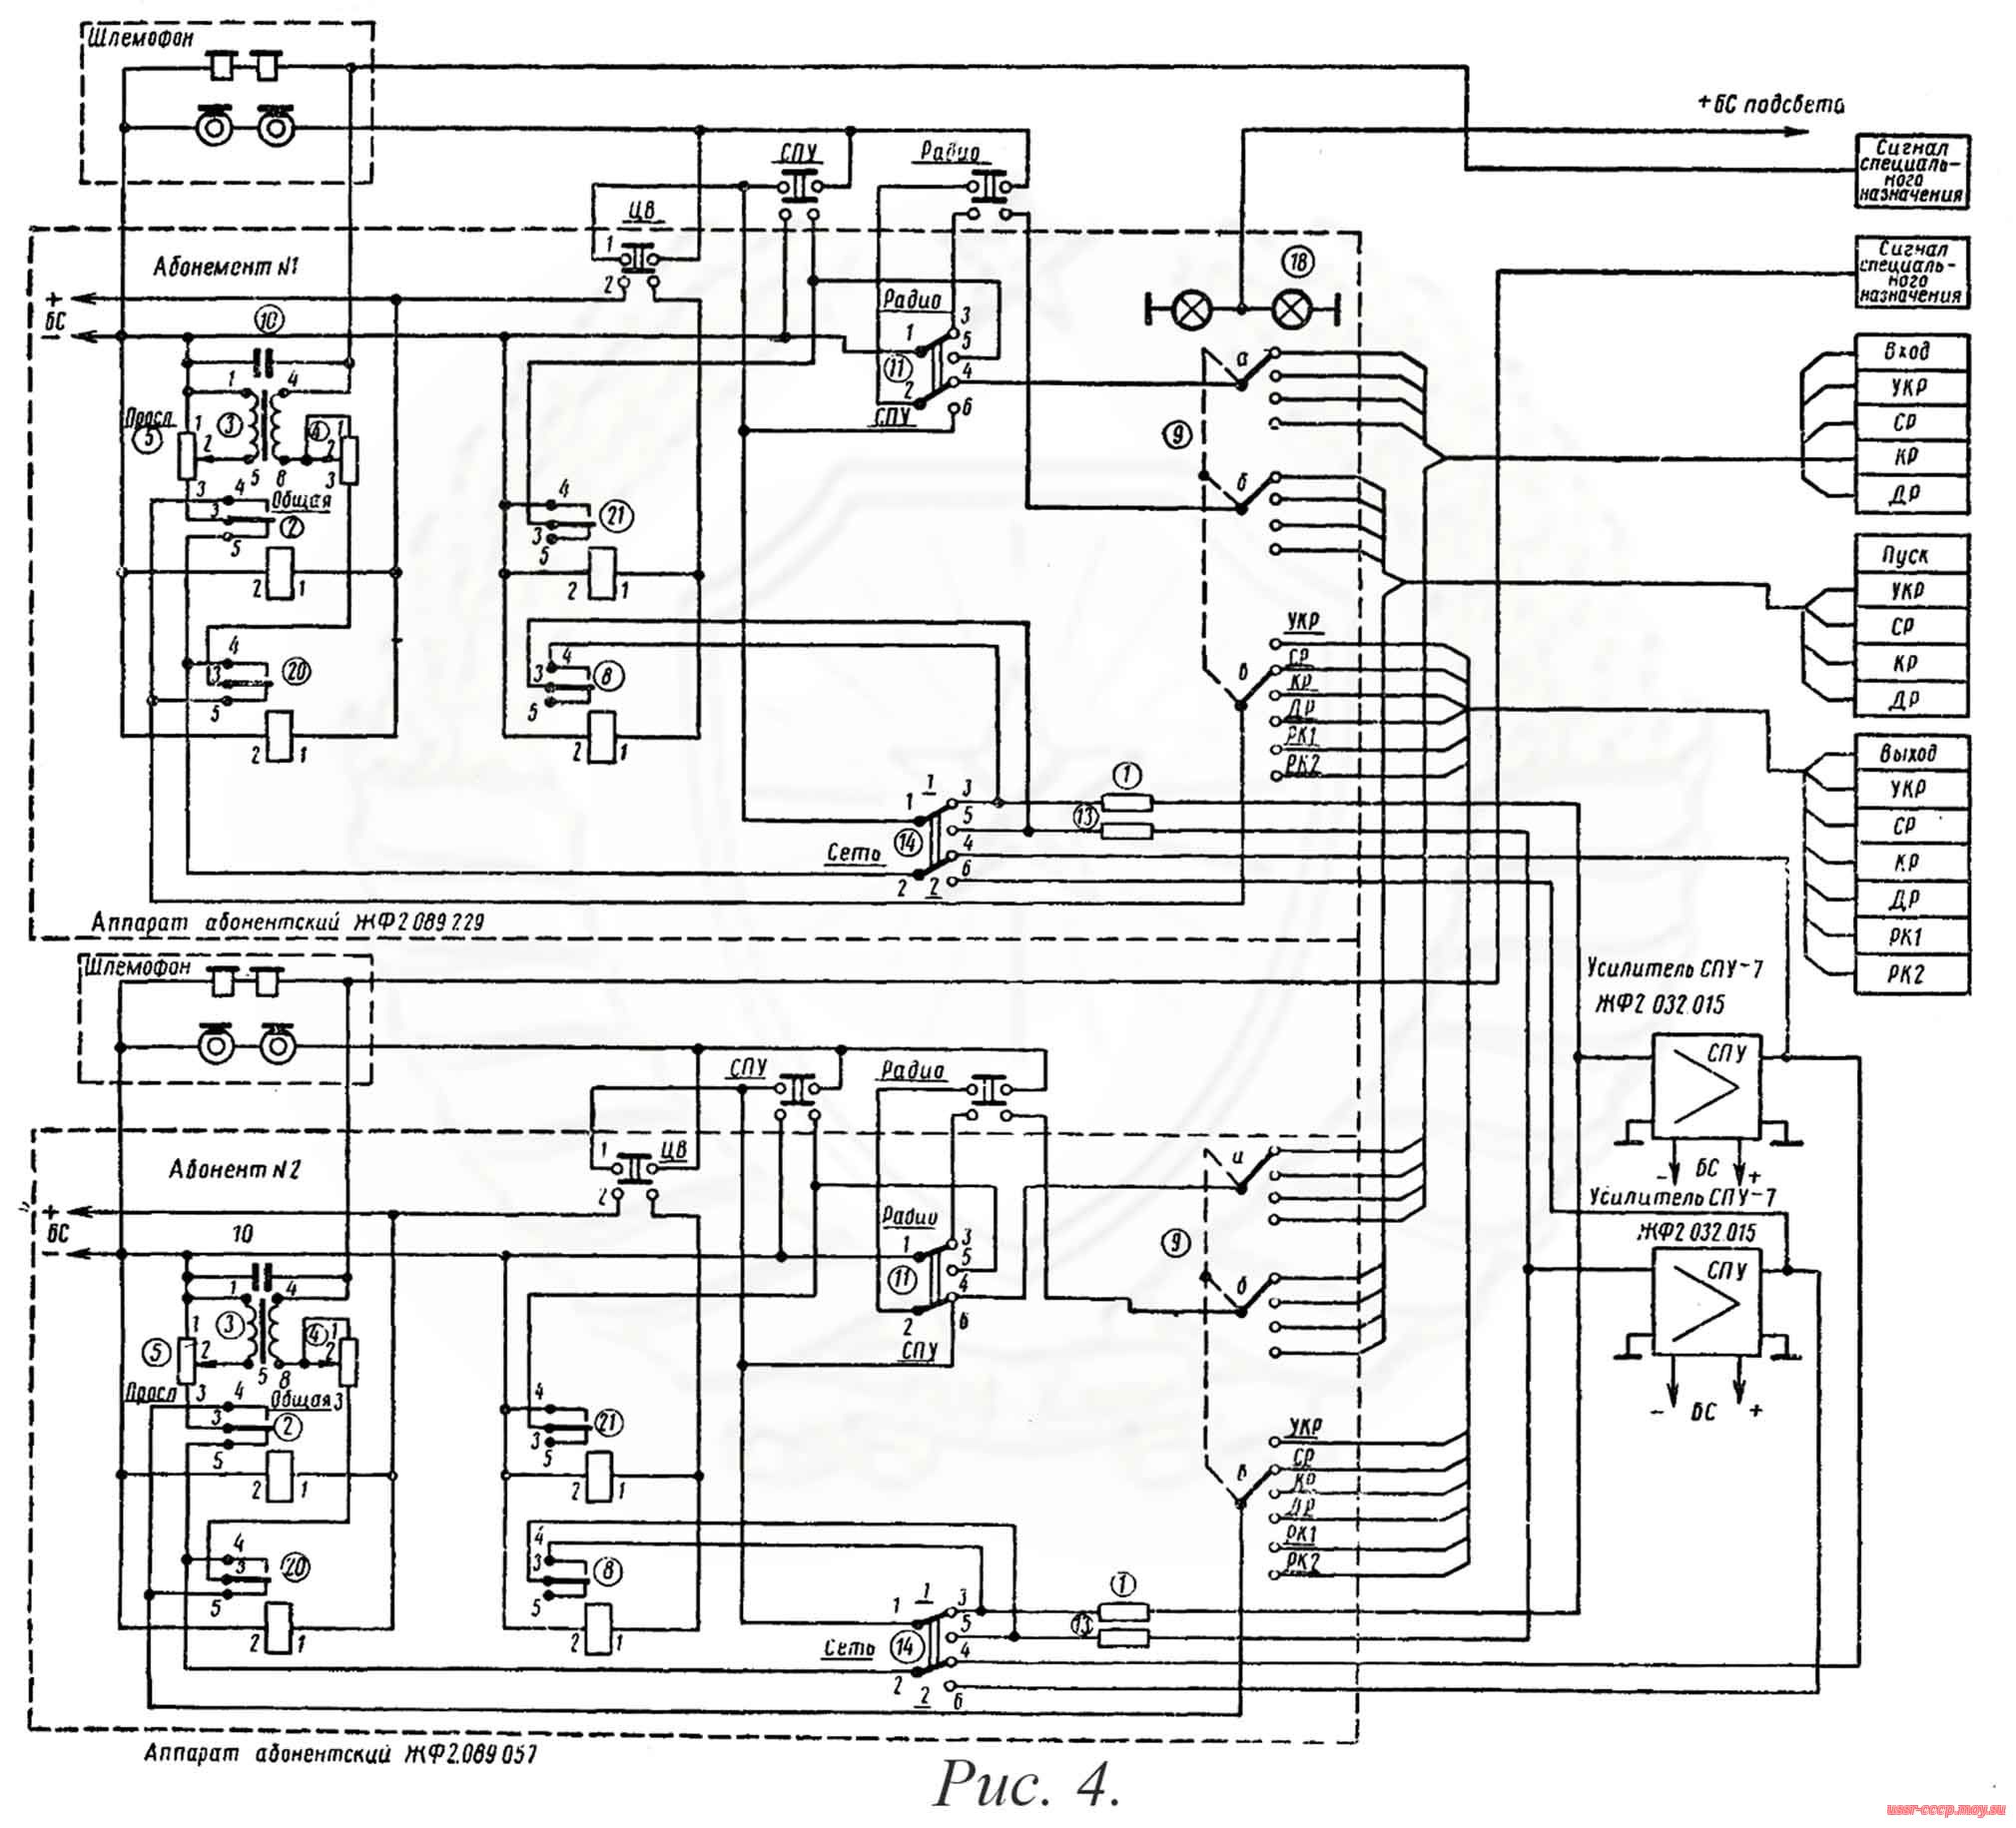 Рис. 4. Схема упрощённых ларингофонных и телефонных цепей СПУ-7.